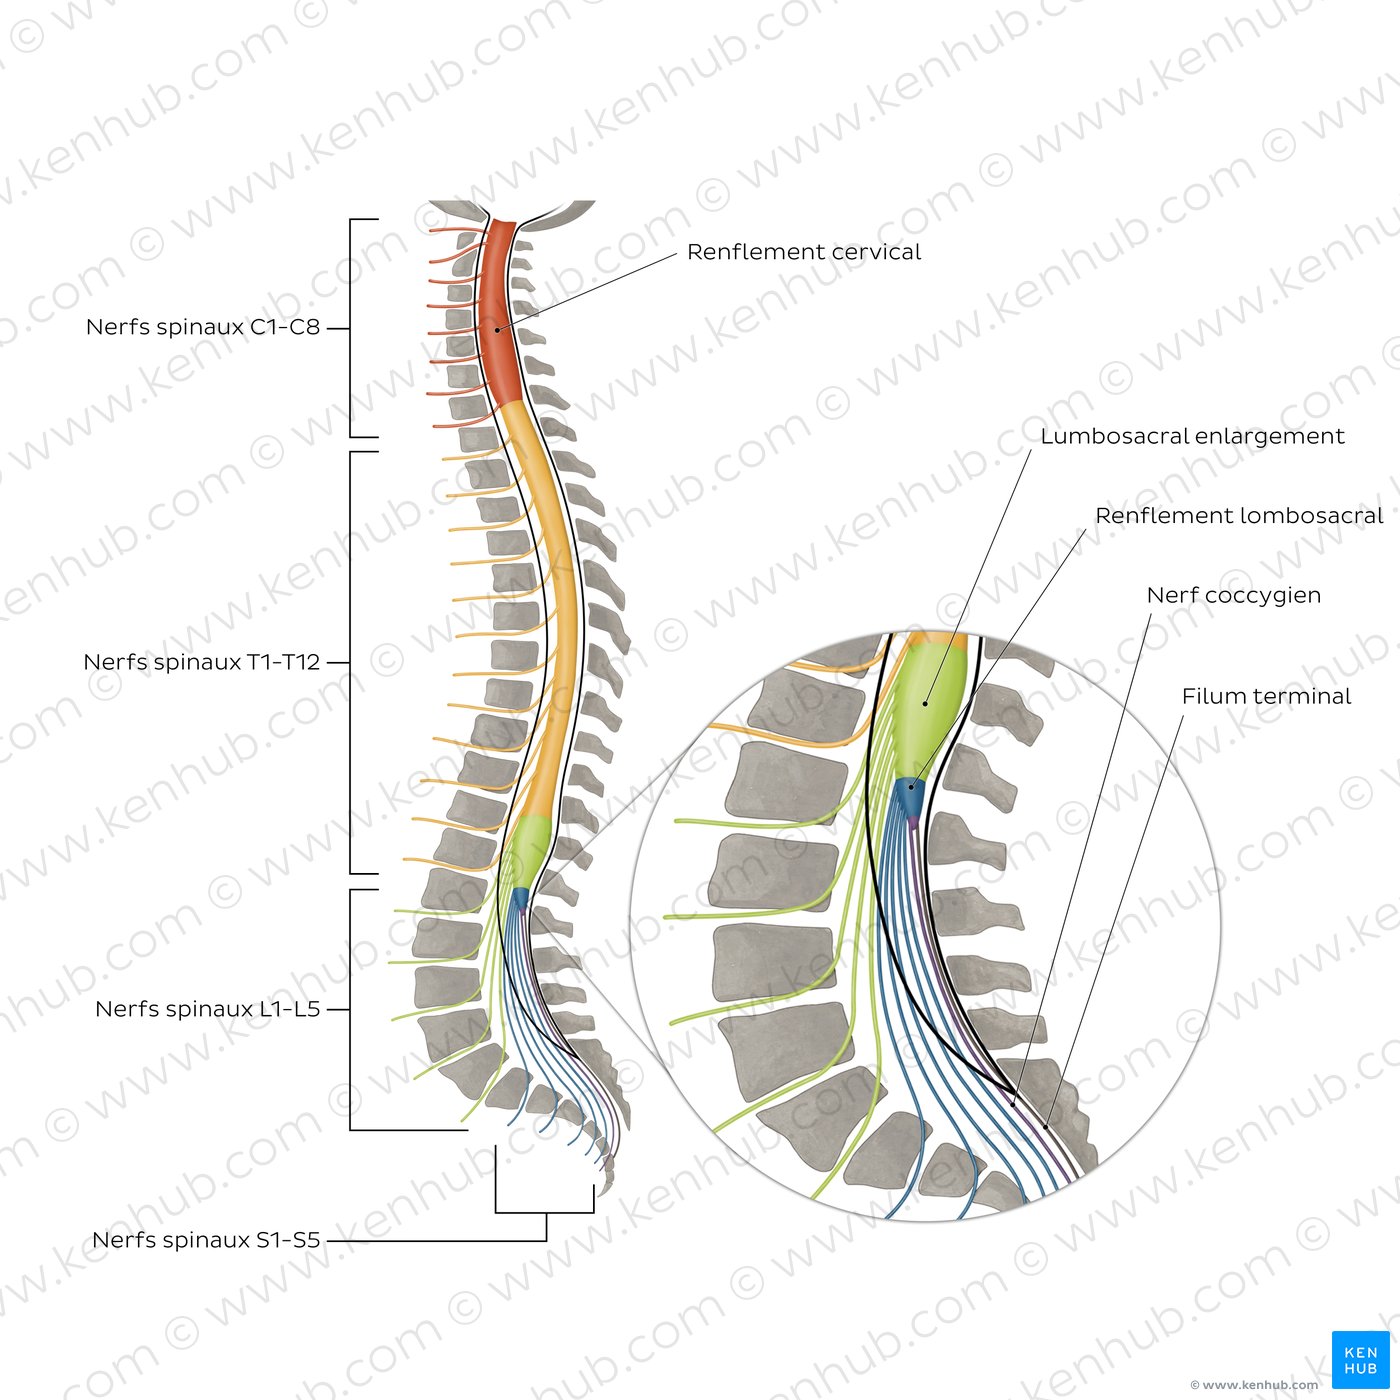 Nerfs spinaux (schéma)